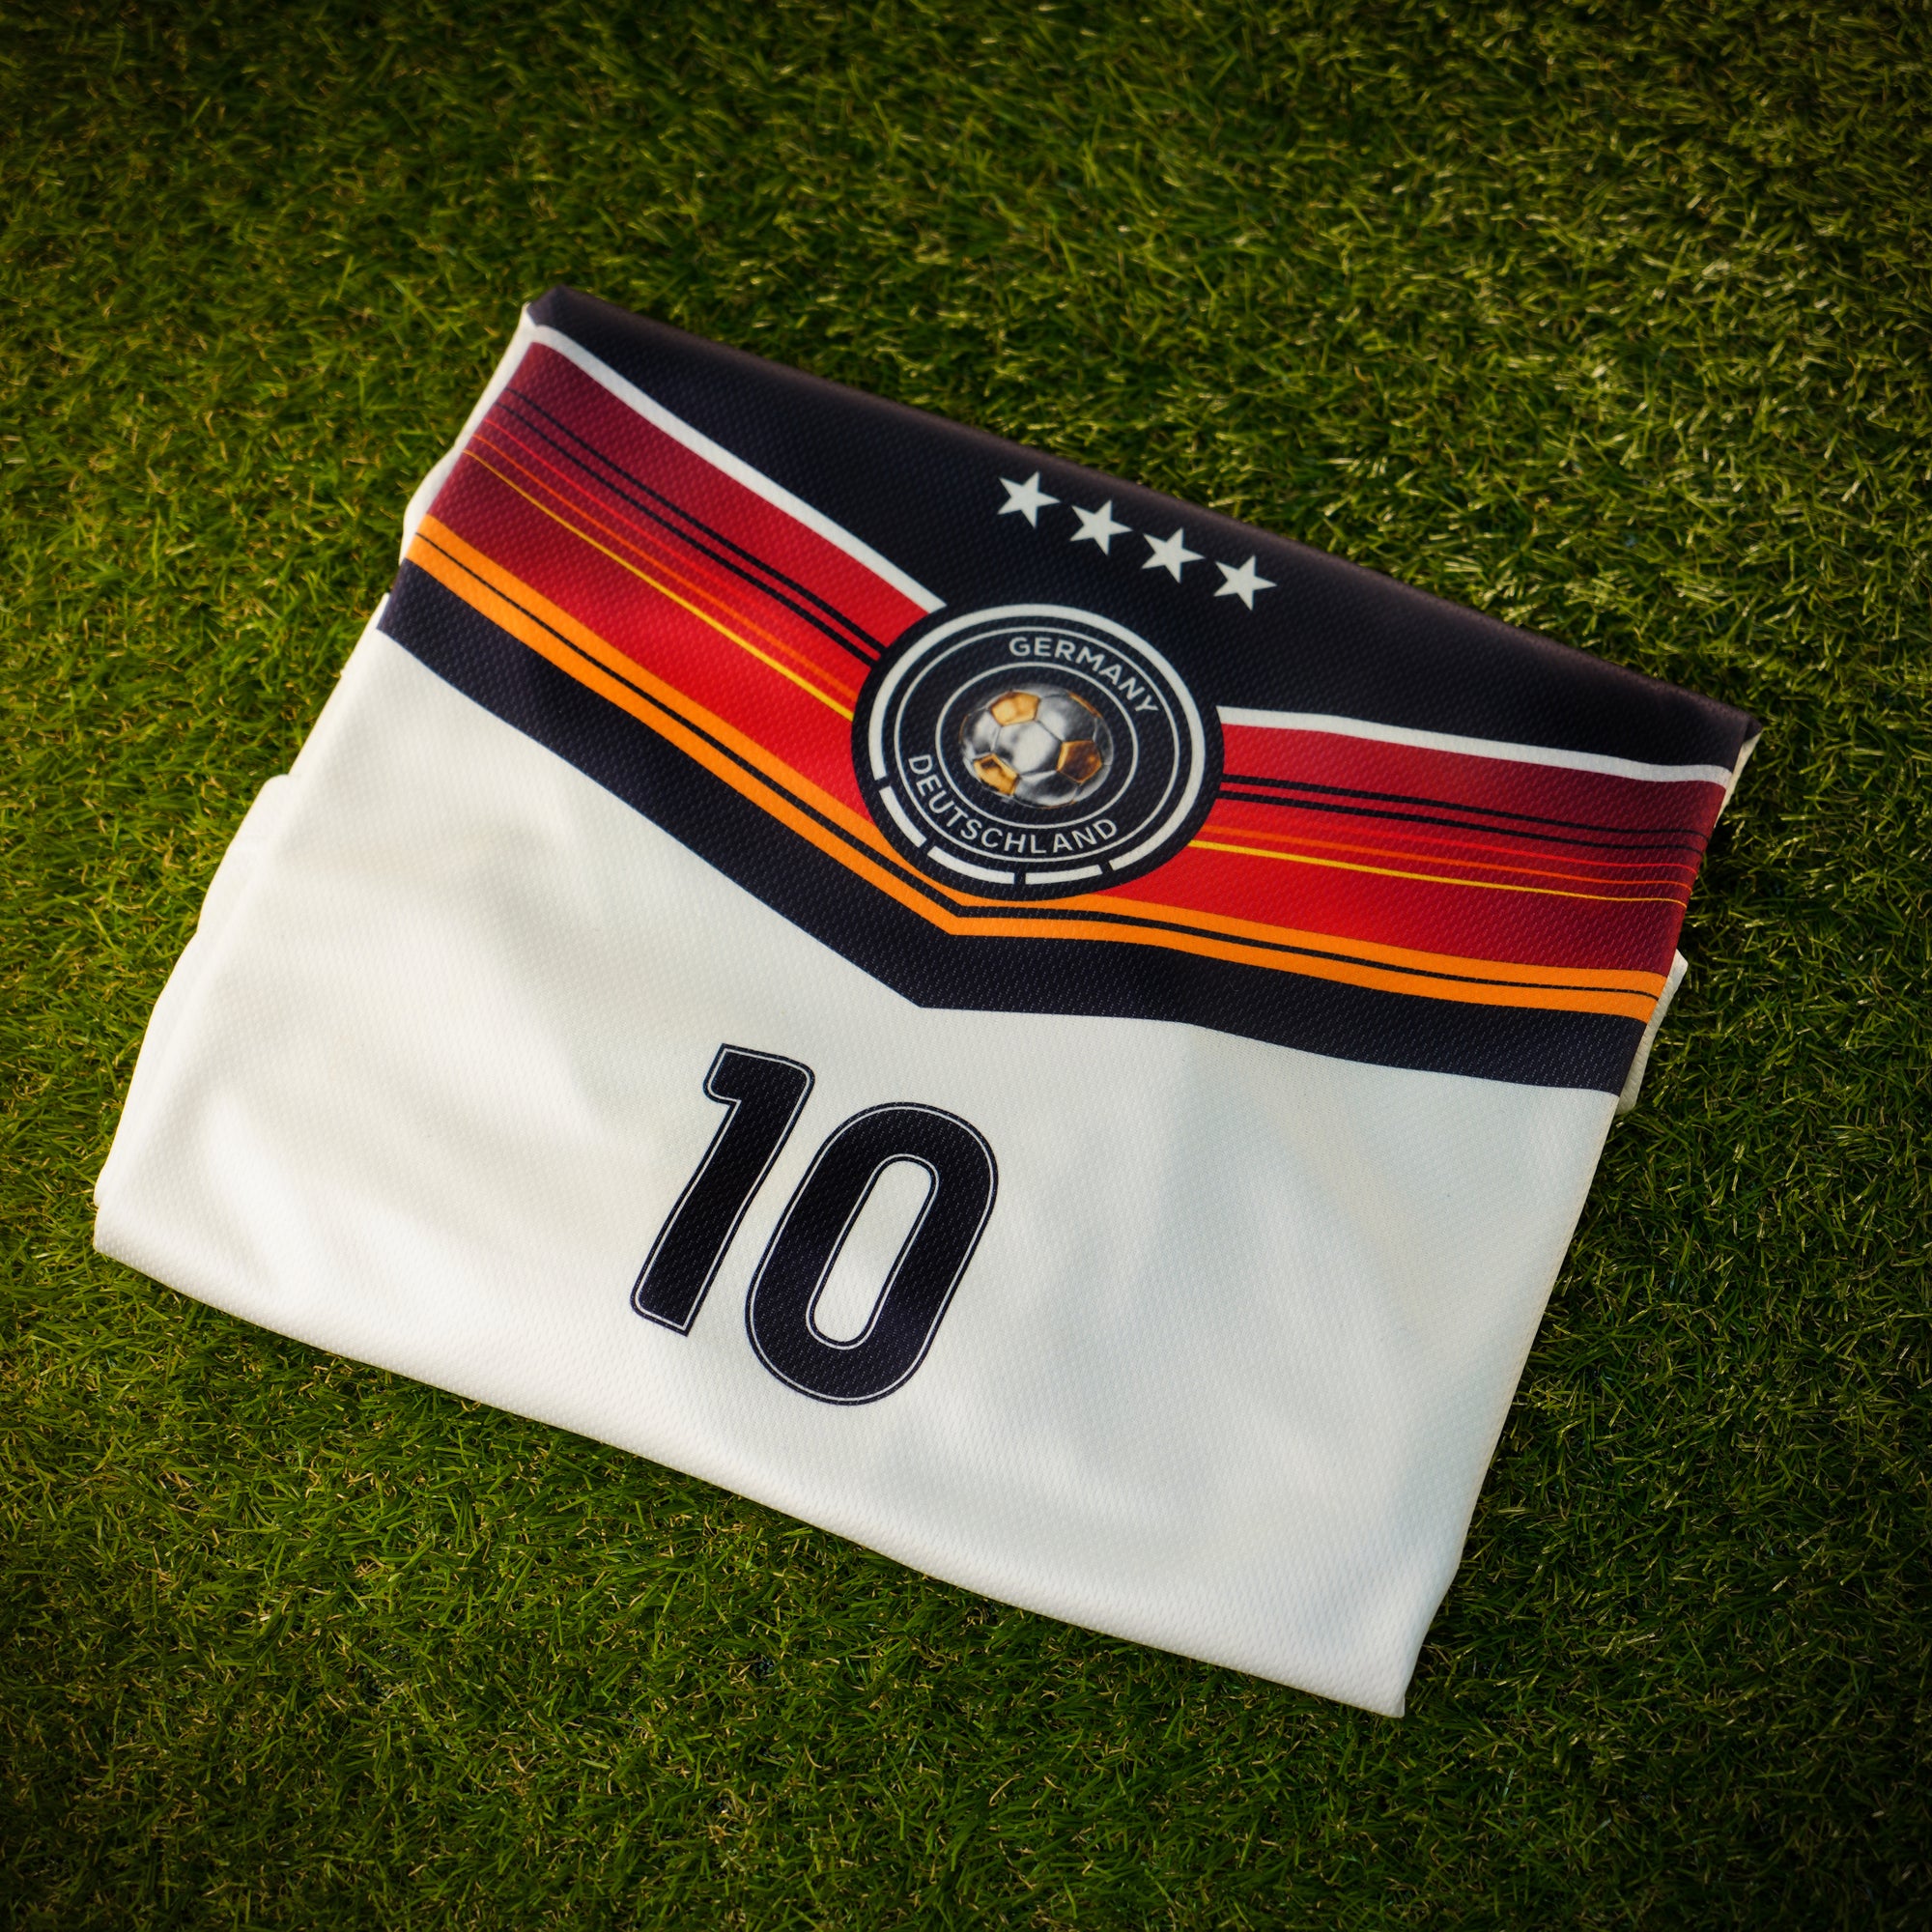 Personalisiertes Deutschland Fußball Trikot für Kinder